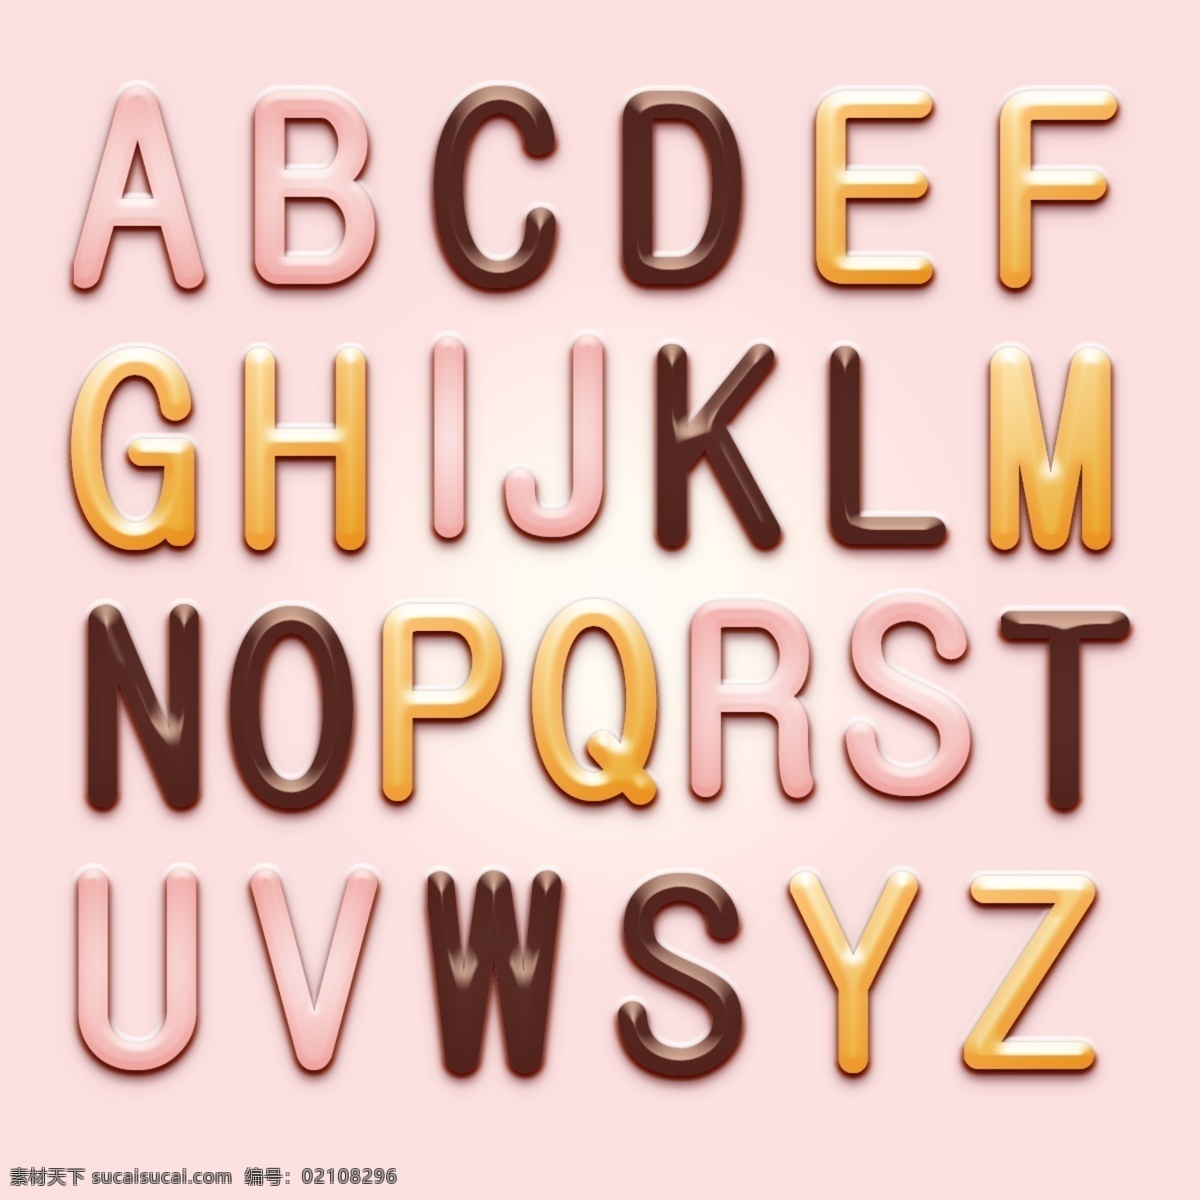 糖果字母 卡通字母 手绘字母 字母图层样式 字母设计 字母大写 英文字母 绚丽字母 巧克力字母 创意字母 艺术字母 时尚字母 现代字母 立体字母 3d字母 儿童字母 食物字母 品质字母 童趣字母 数字字母 标志图标 其他图标